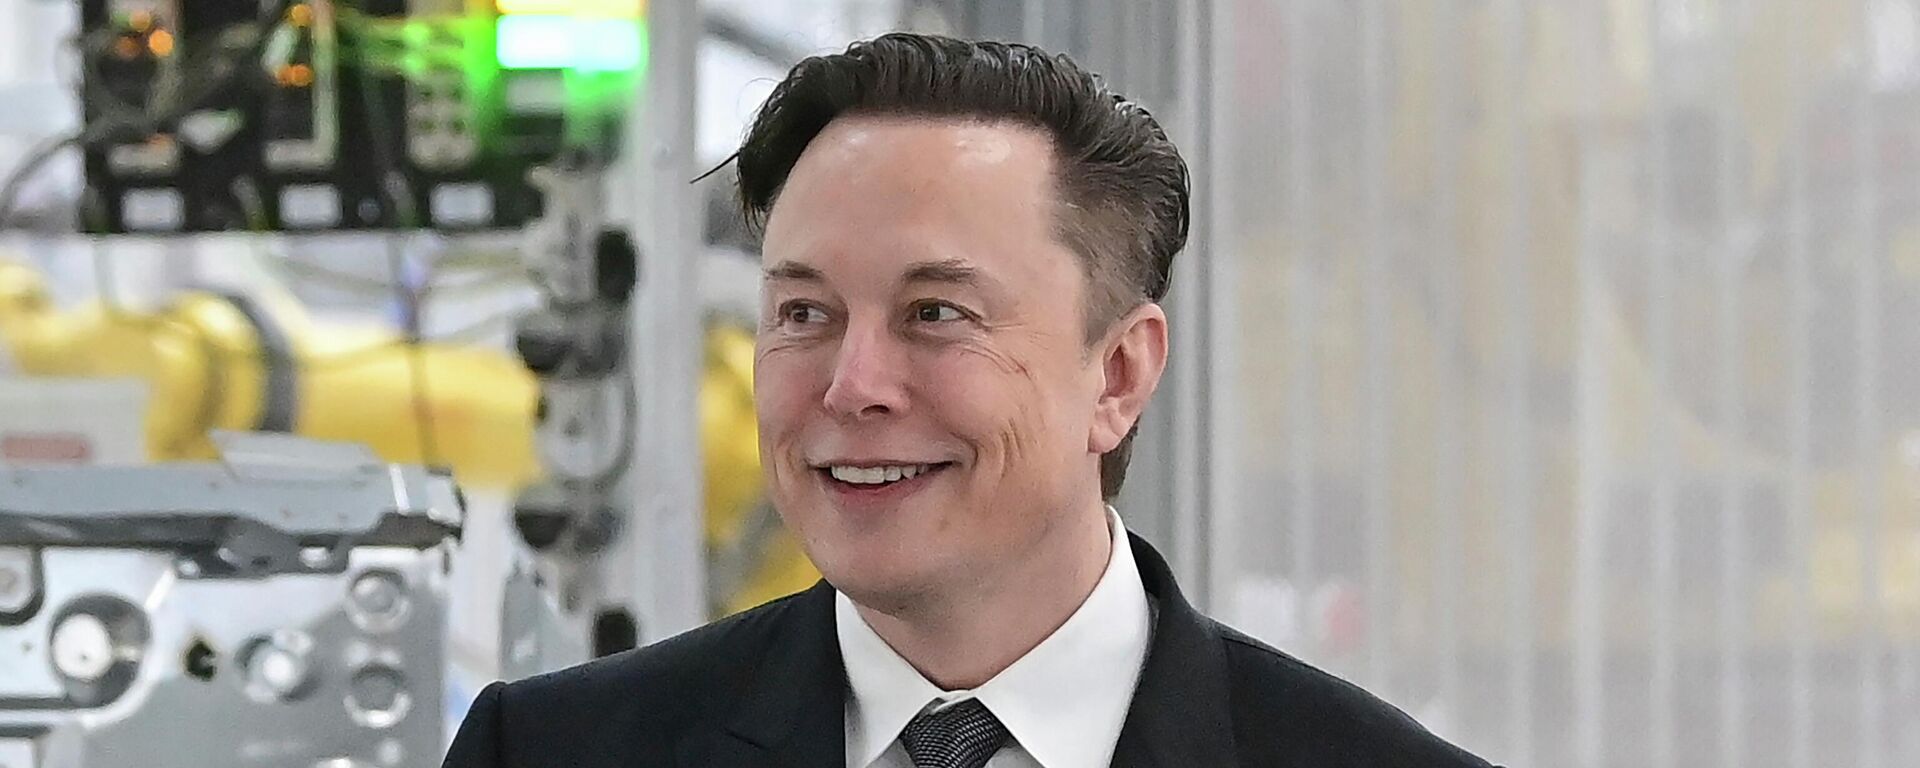  Tesla CEO Elon Musk attends the opening of the Tesla factory Berlin Brandenburg in Gruenheide, Germany on March 22, 2022. - Sputnik International, 1920, 21.12.2022